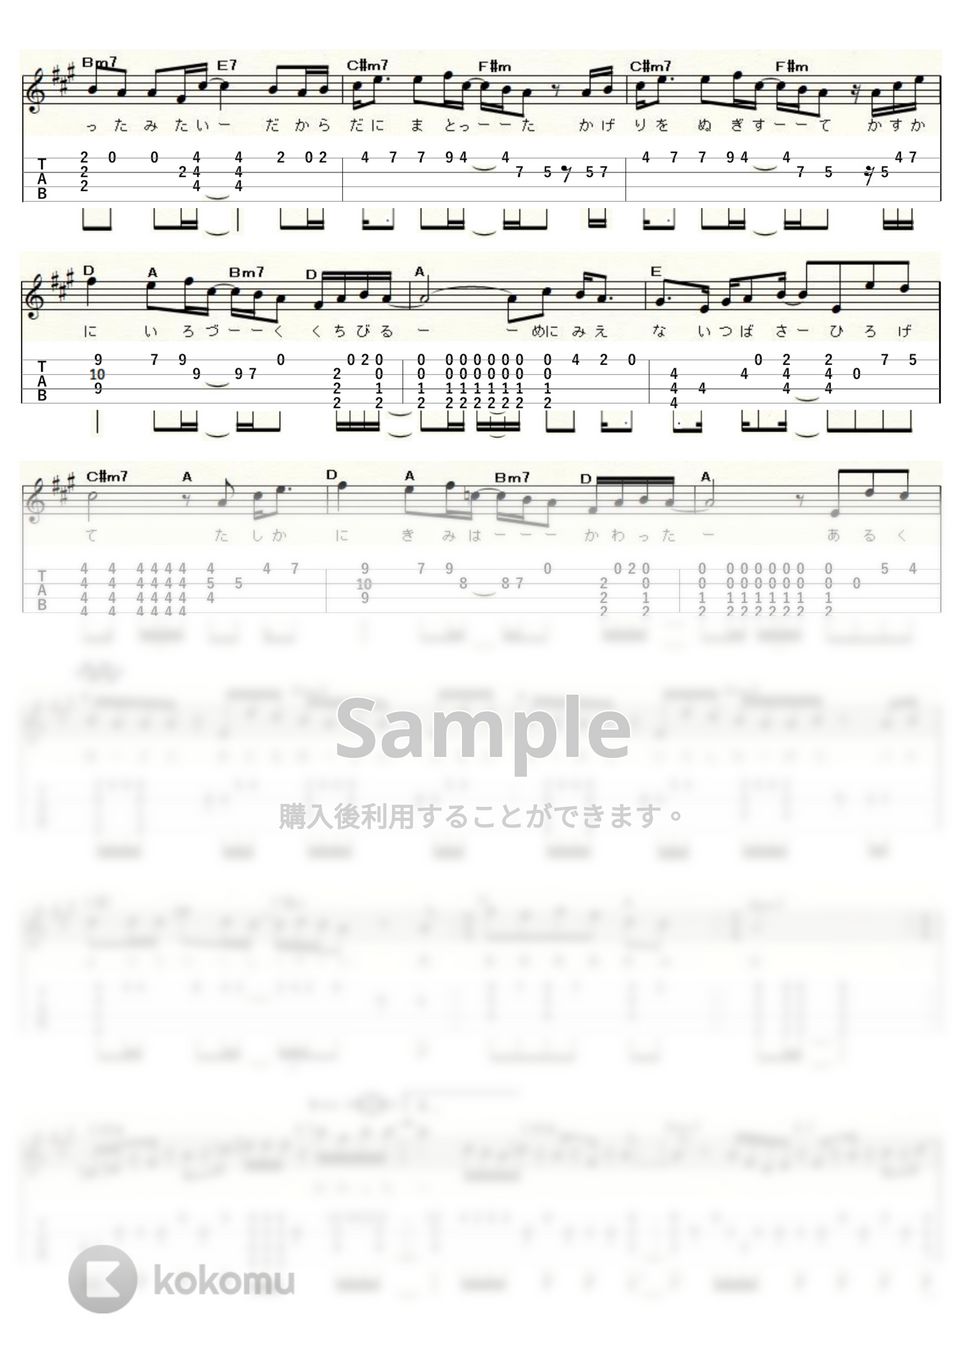 布施　明 - 君は薔薇より美しい (ｳｸﾚﾚｿﾛ / High-G・Low-G / 中級～上級) by ukulelepapa